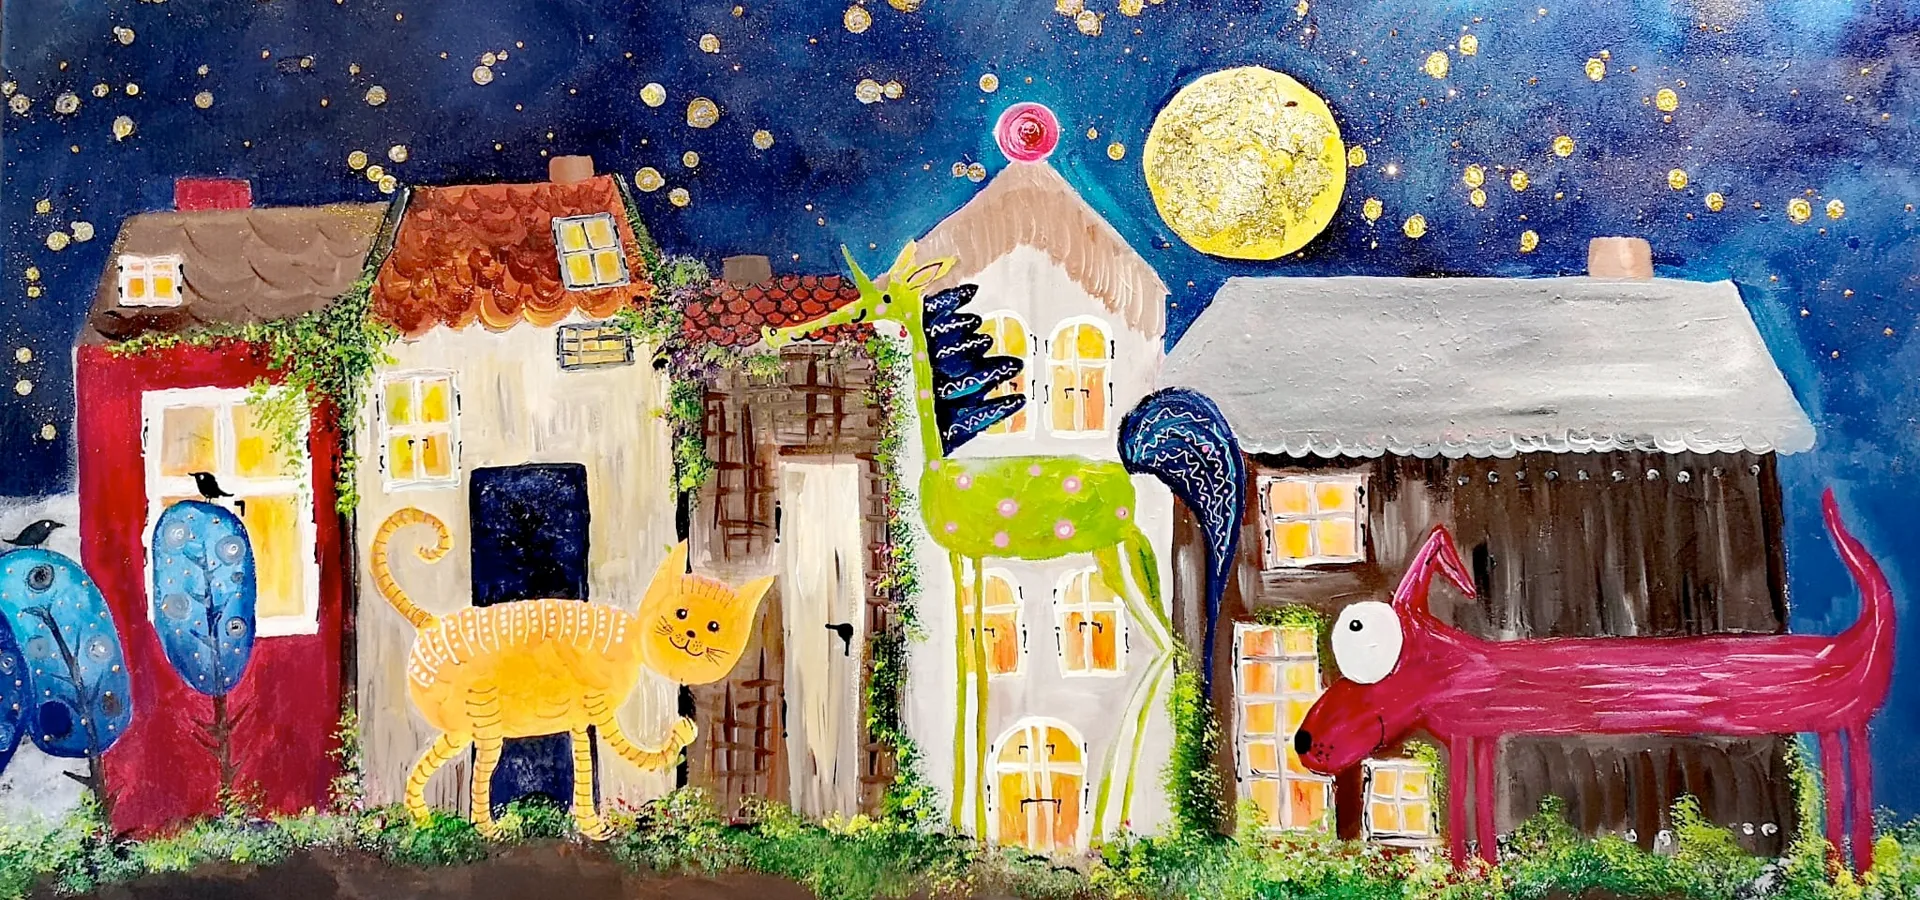 Buntes Gemälde mit Tieren, Häusern und einem Mond bei Nacht.